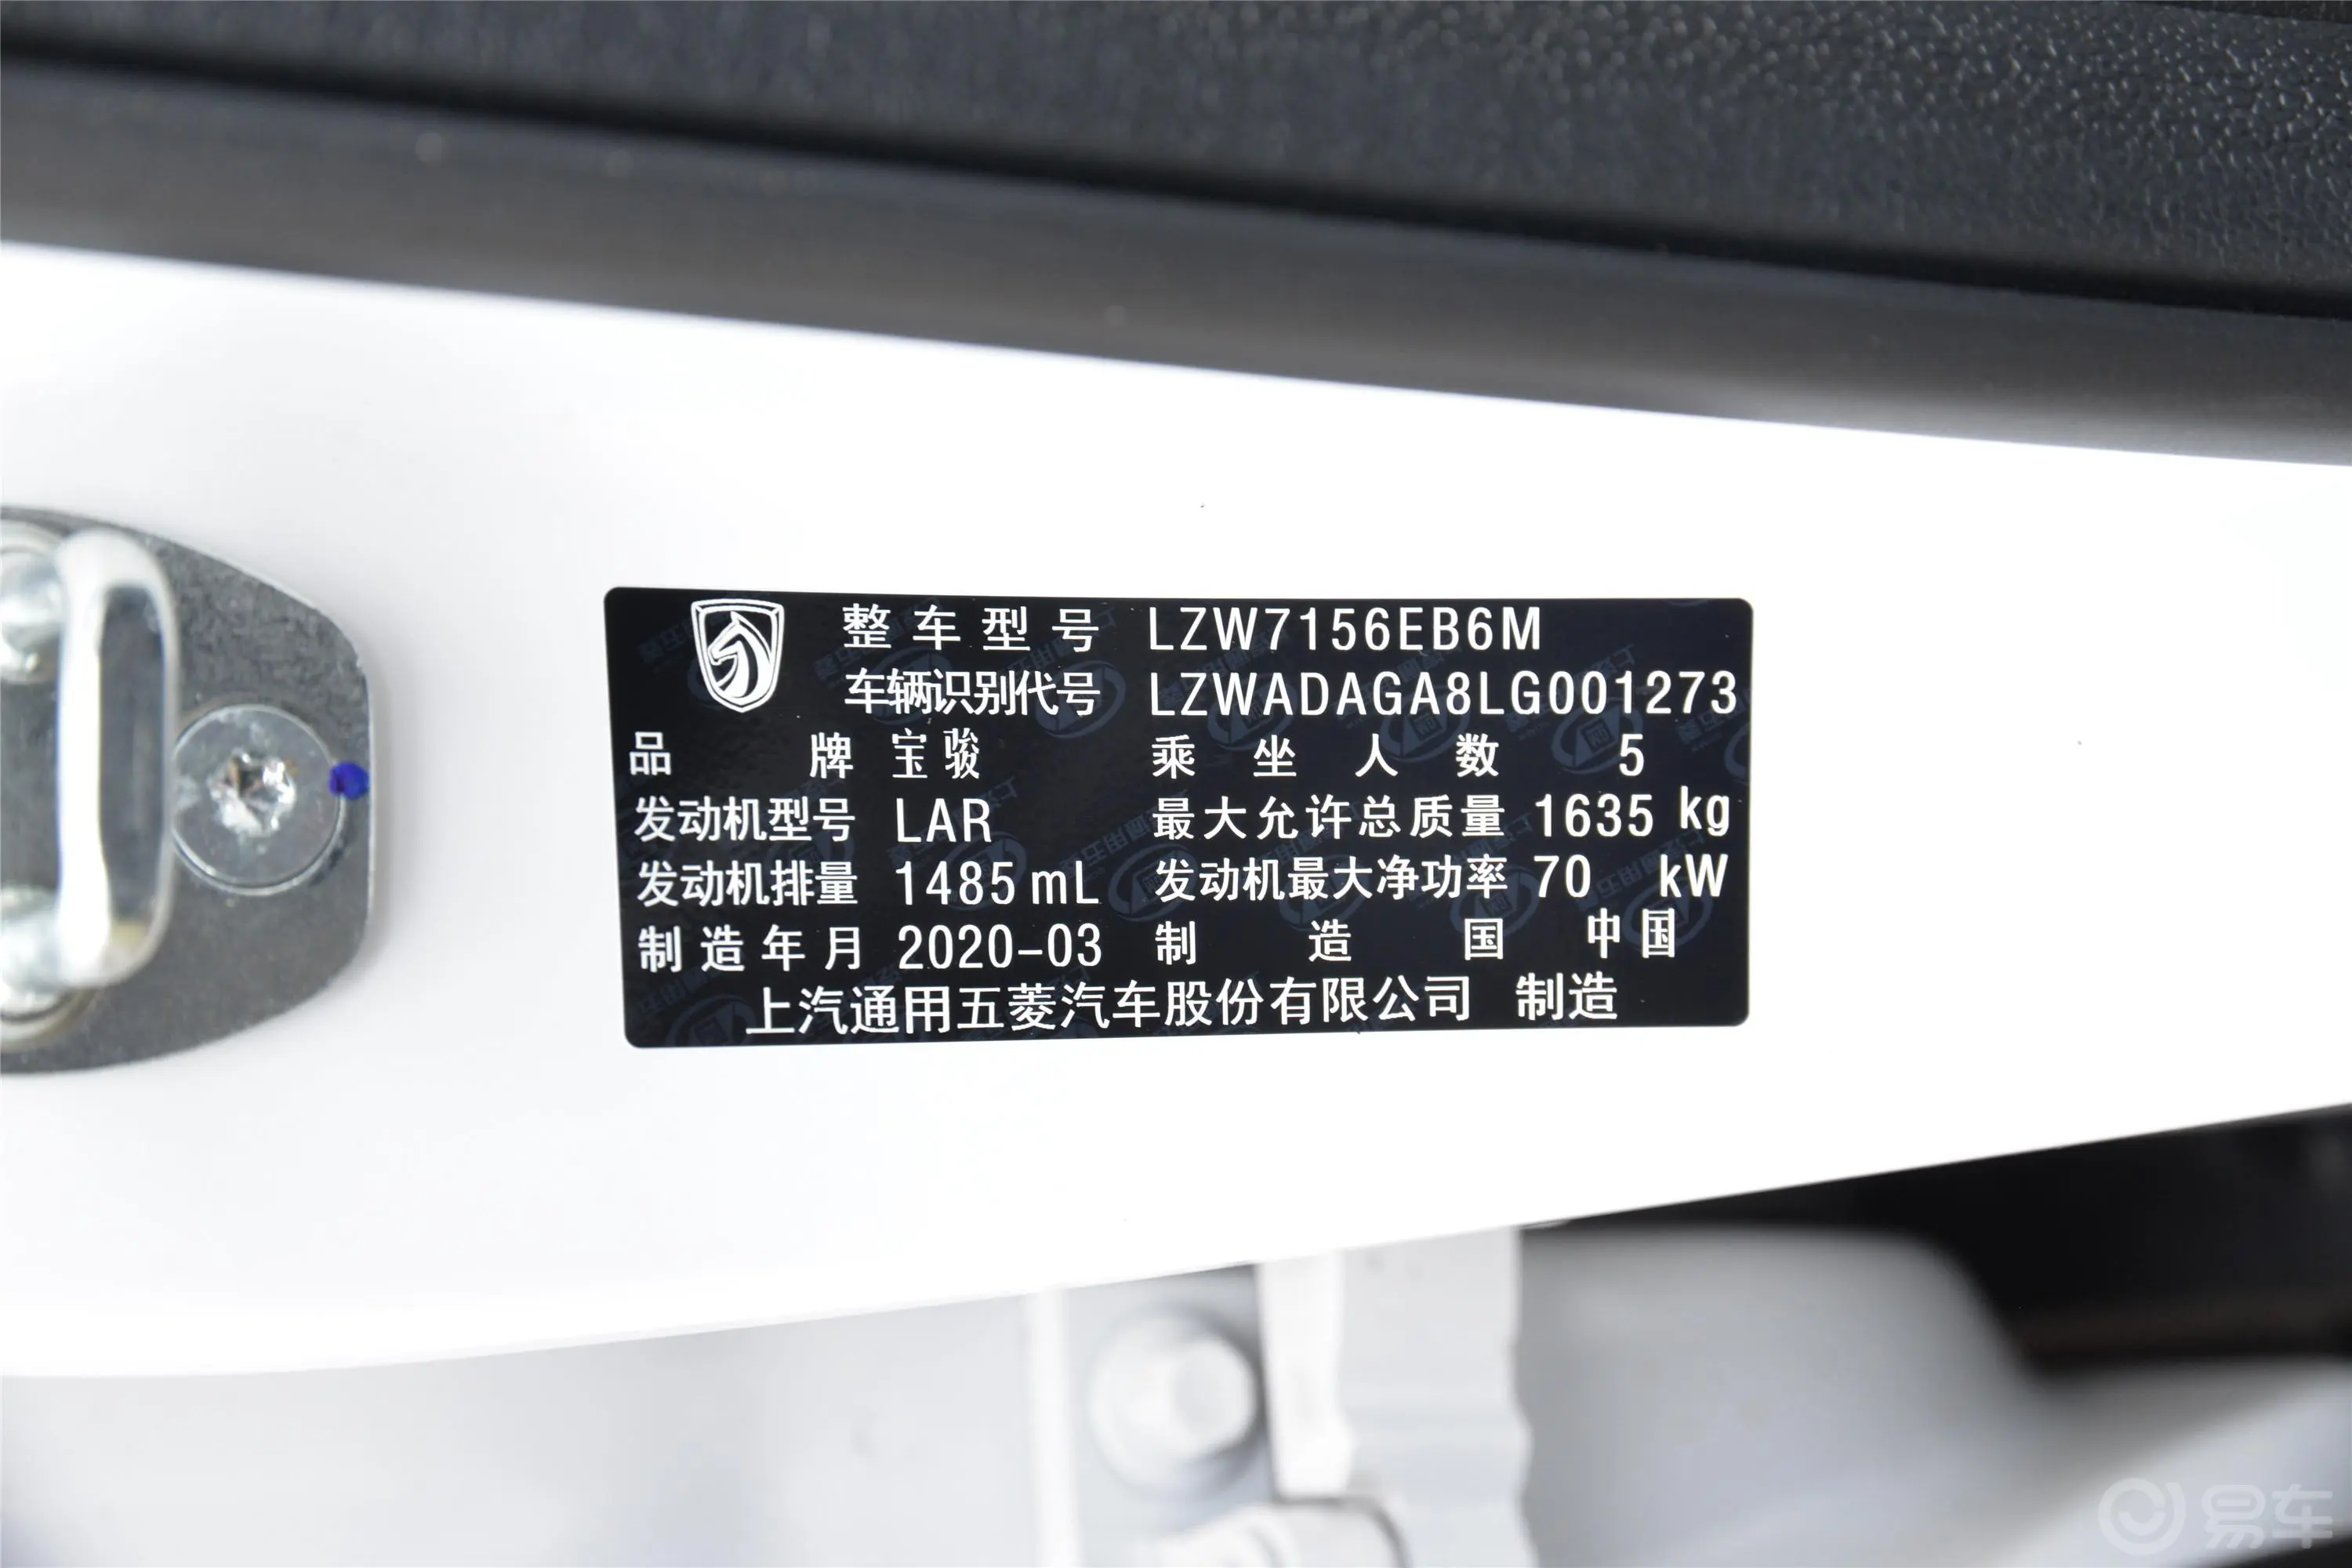 宝骏5101.5L 手动 优享型 143N·m 国VI车辆信息铭牌